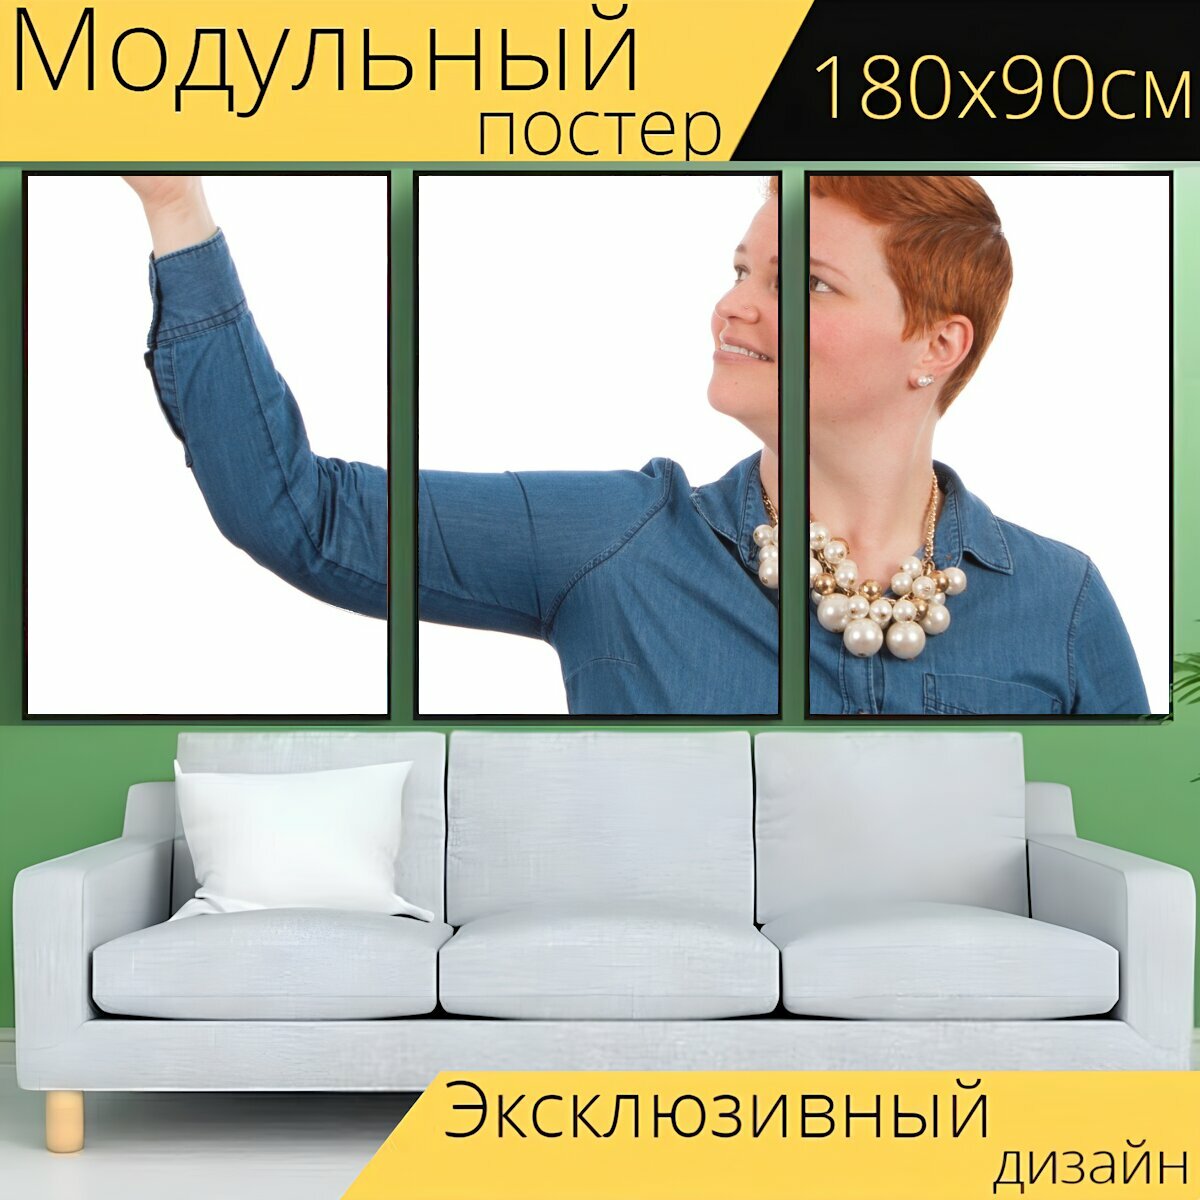 Модульный постер "Женщина, позы, электронное обучение" 180 x 90 см. для интерьера